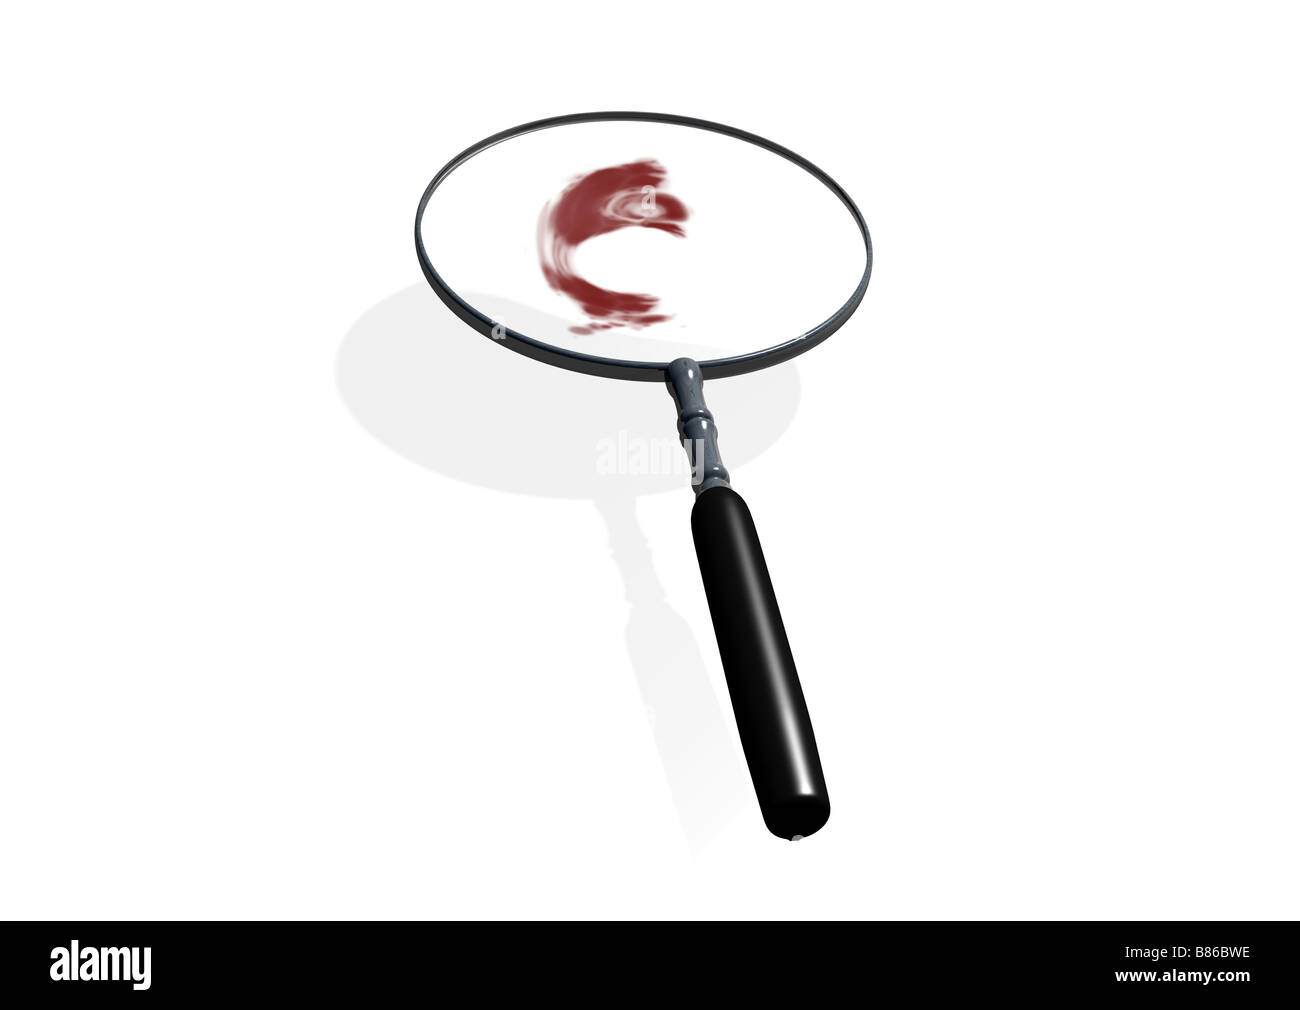 Une loupe utilisée pour enquêter sur le sang ou une scène de crime. Concept pour l'analyse judiciaire. Banque D'Images